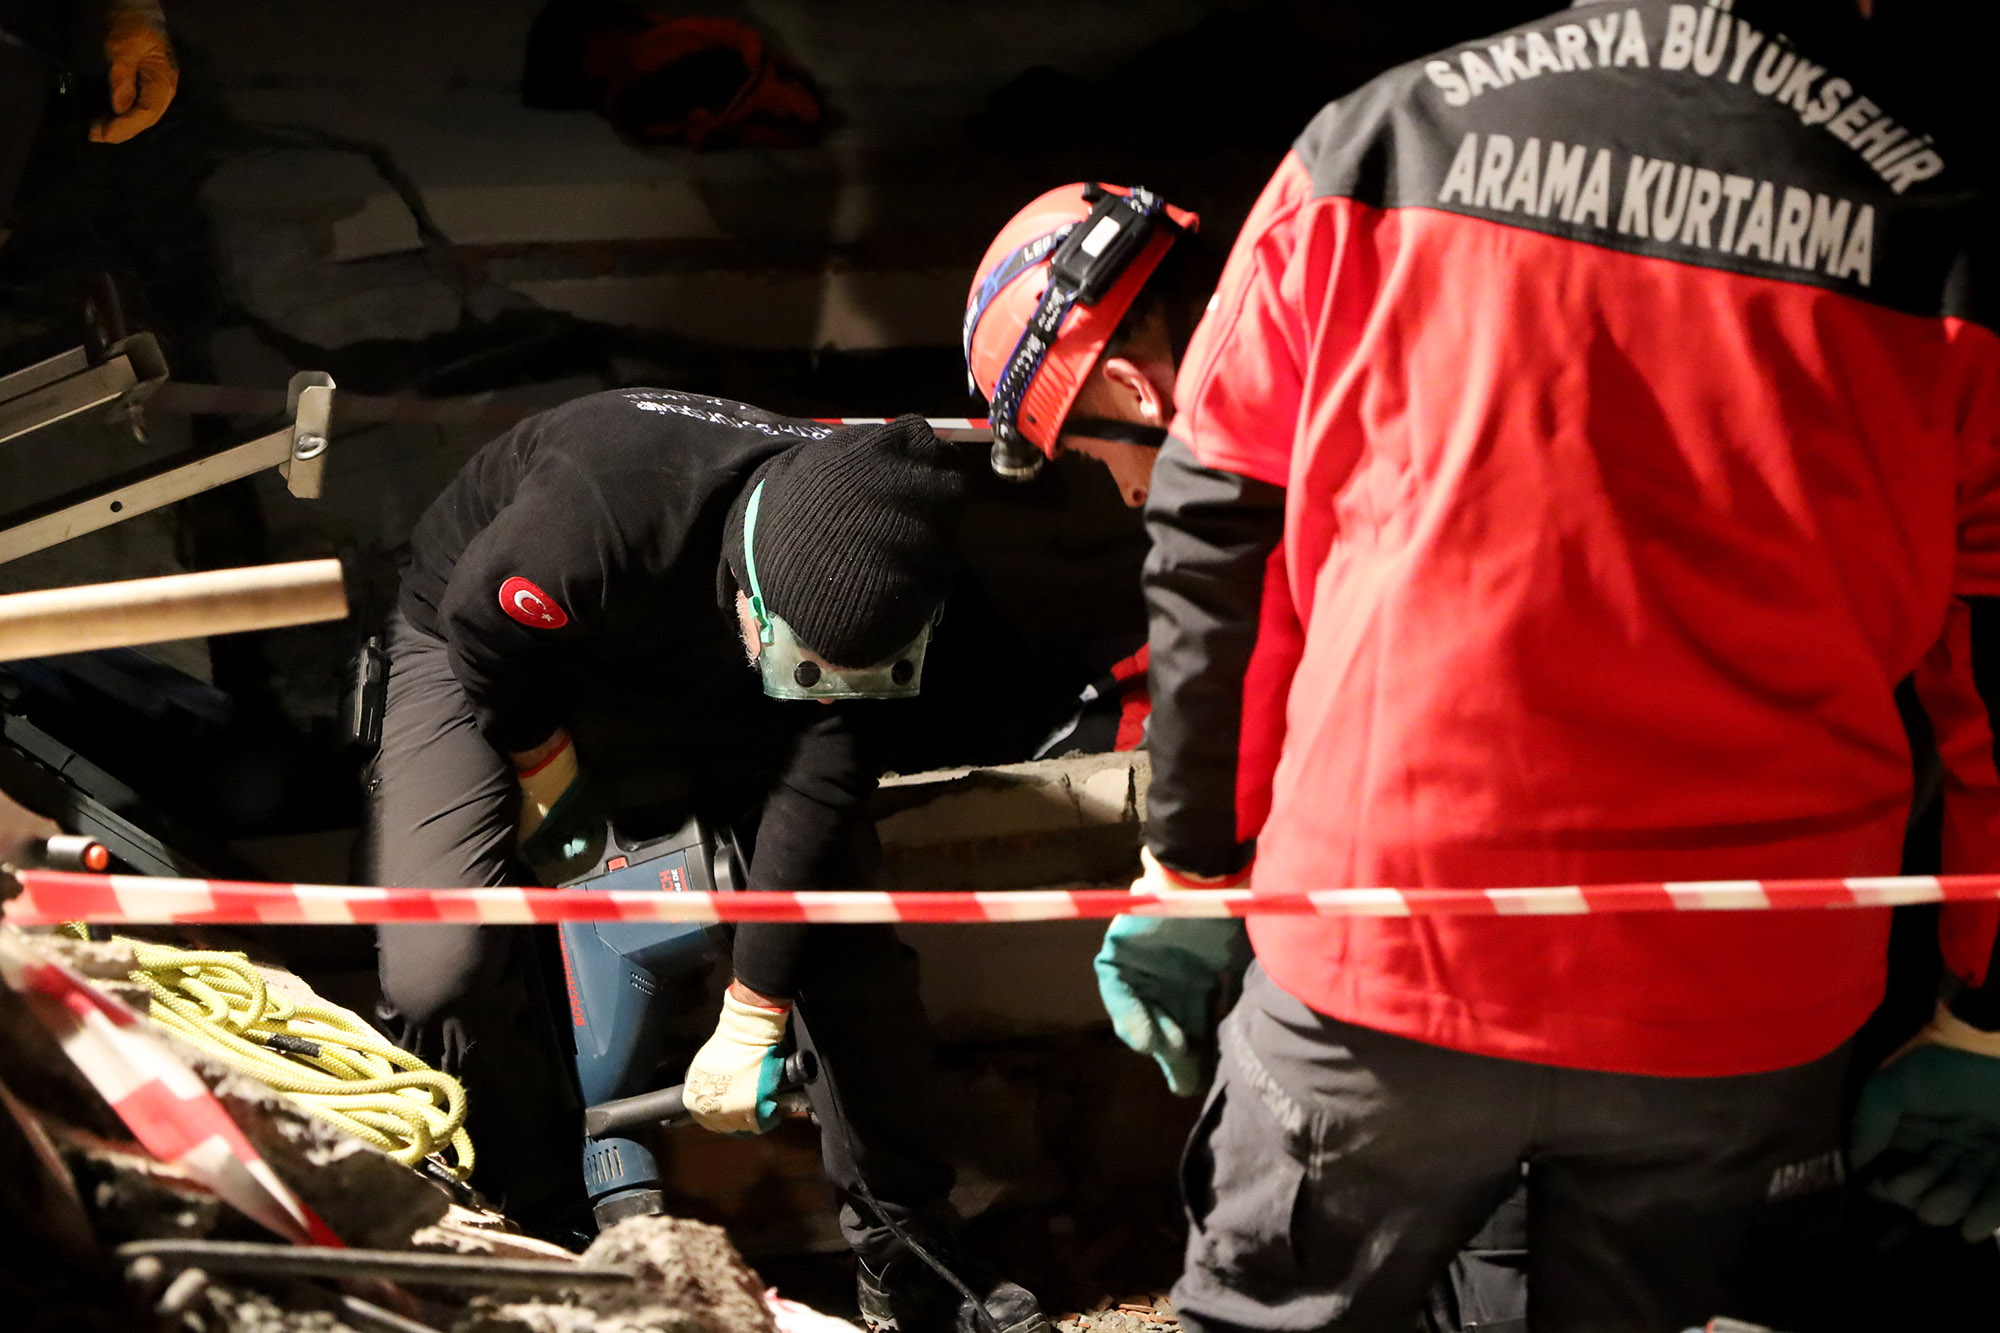 Büyükşehir arama kurtarma ekibi şehrin kalbindeki o enkaza girdi: Aksiyonun tırmandığı gece